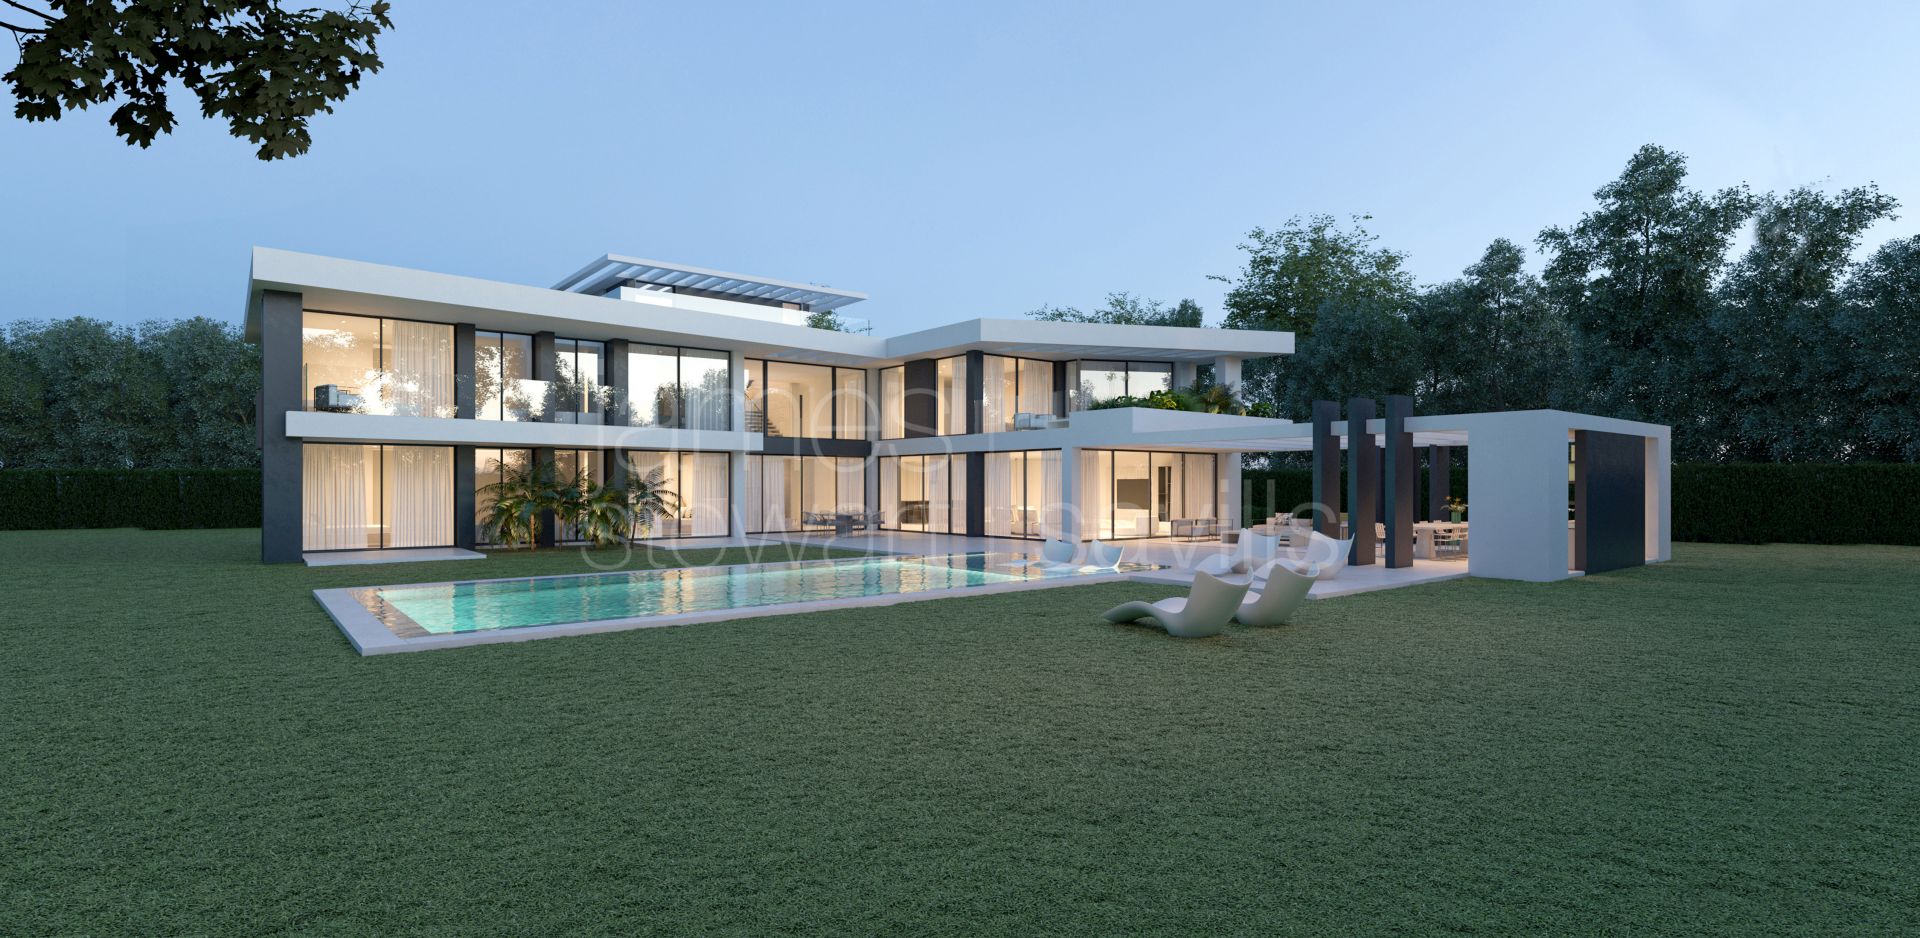 Brand new contemporary Villa in the Kings & Queens area of Sotogrande Costa